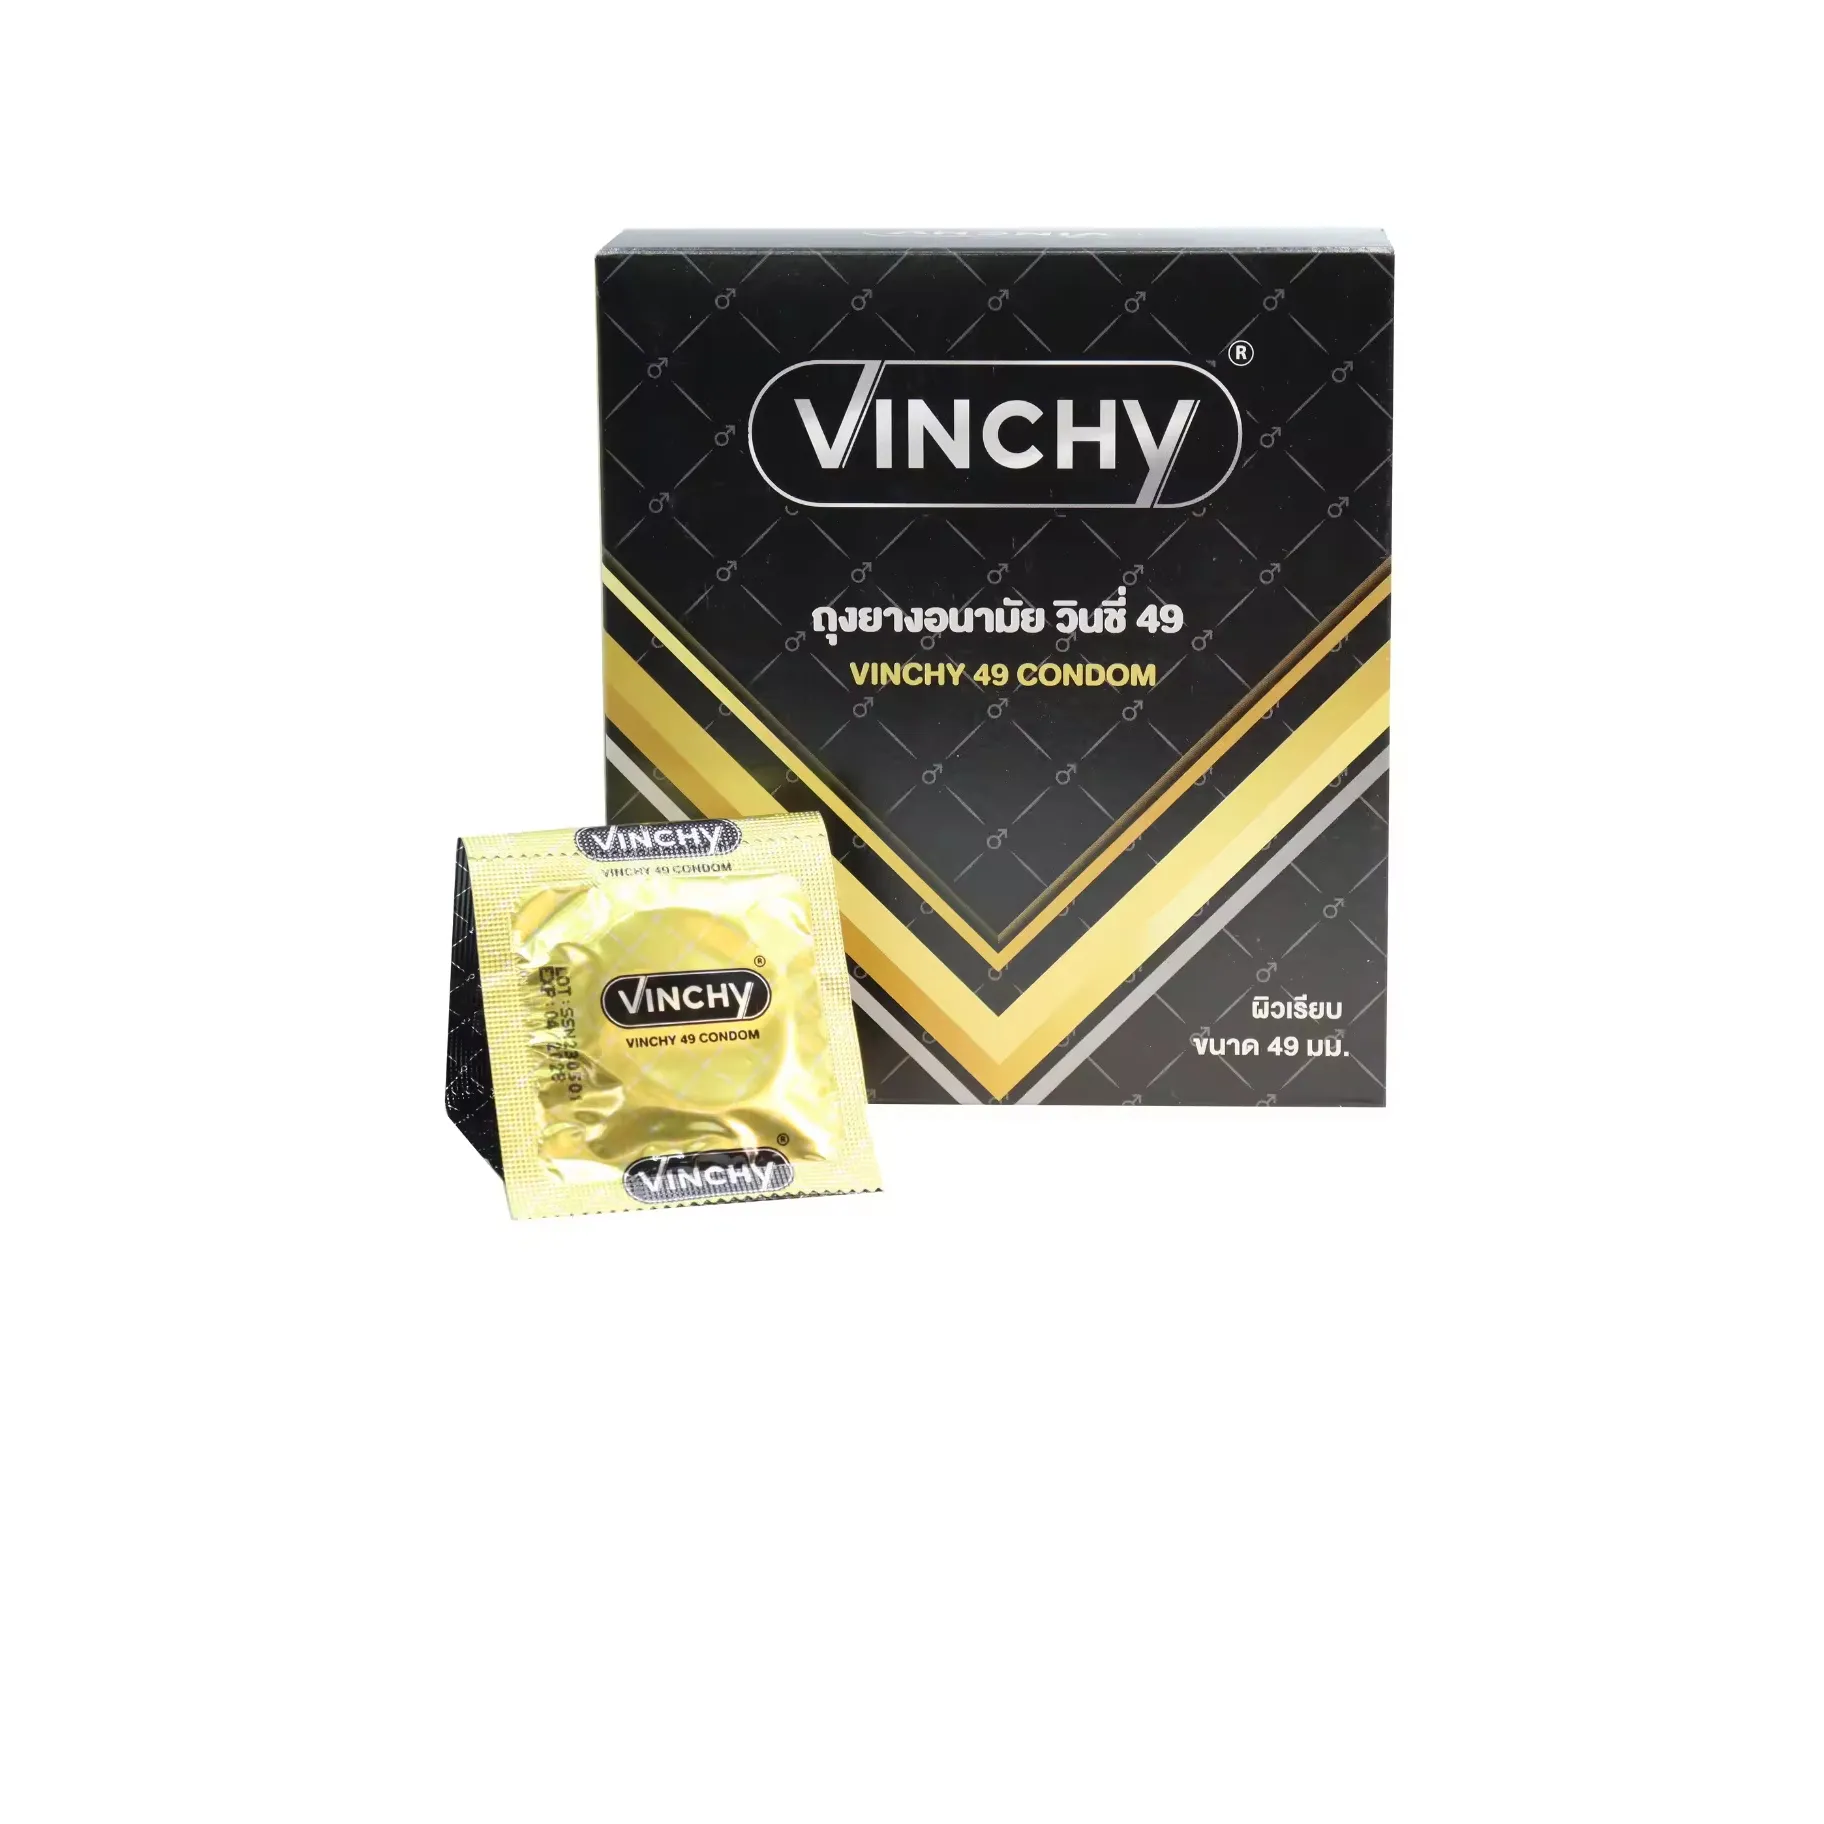 Hot new Brand Vinchy Préservatifs pour hommes en latex de caoutchouc naturel produit de Thaïlande et Offre Spéciale meilleure qualité prix de gros